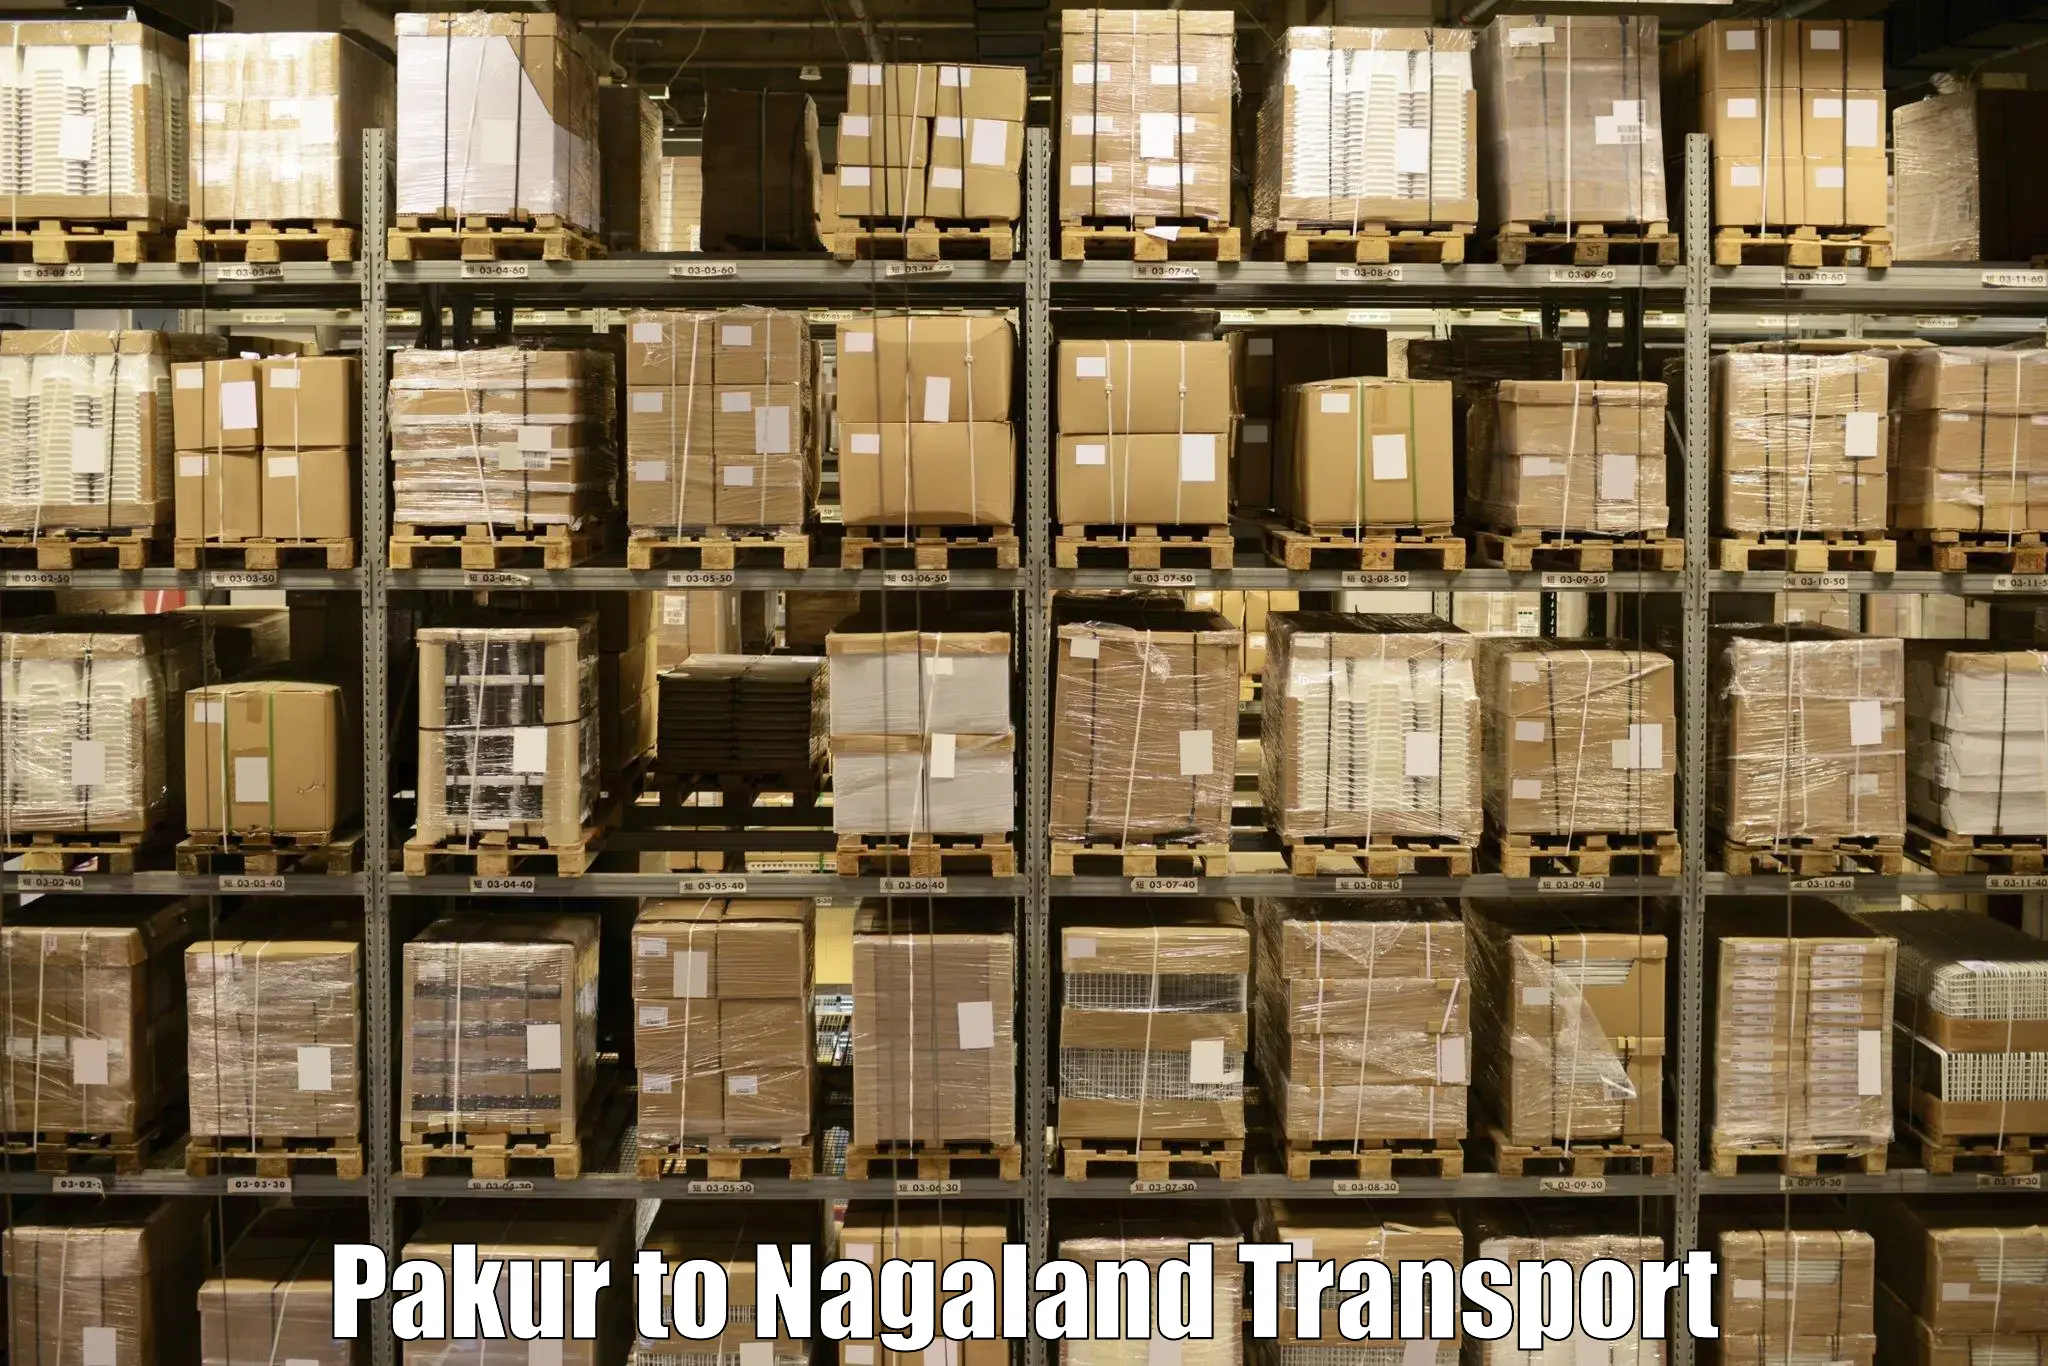 Daily transport service Pakur to Chumukedima